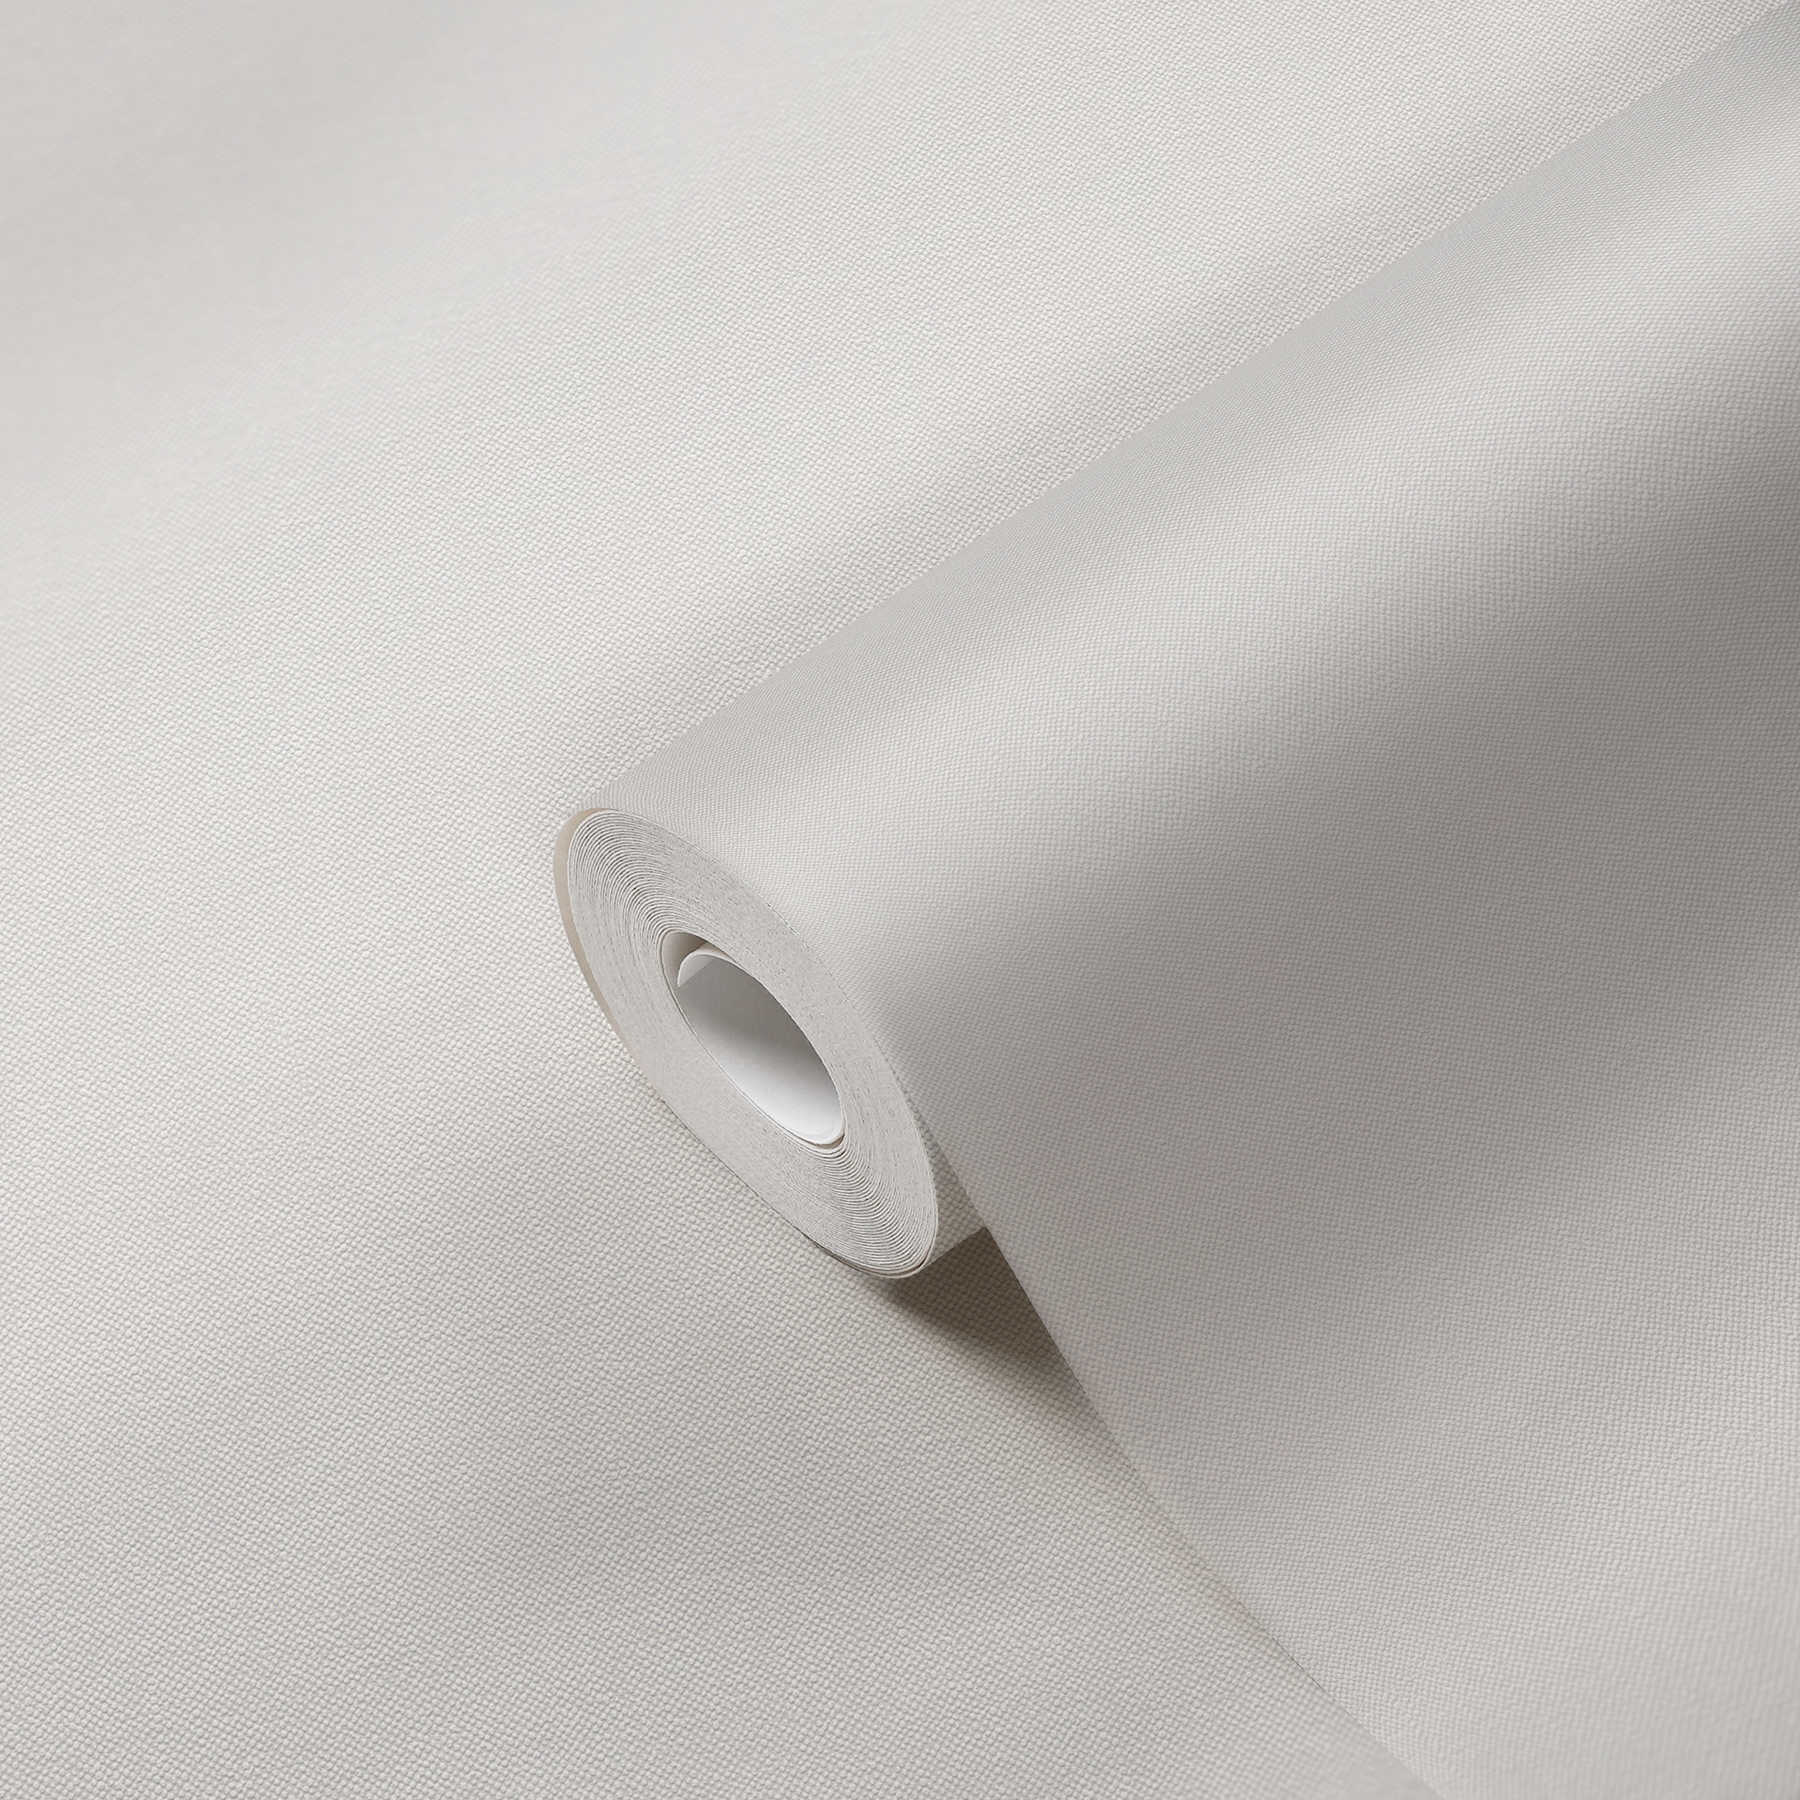             Carta da parati crema effetto lino con struttura tessile
        